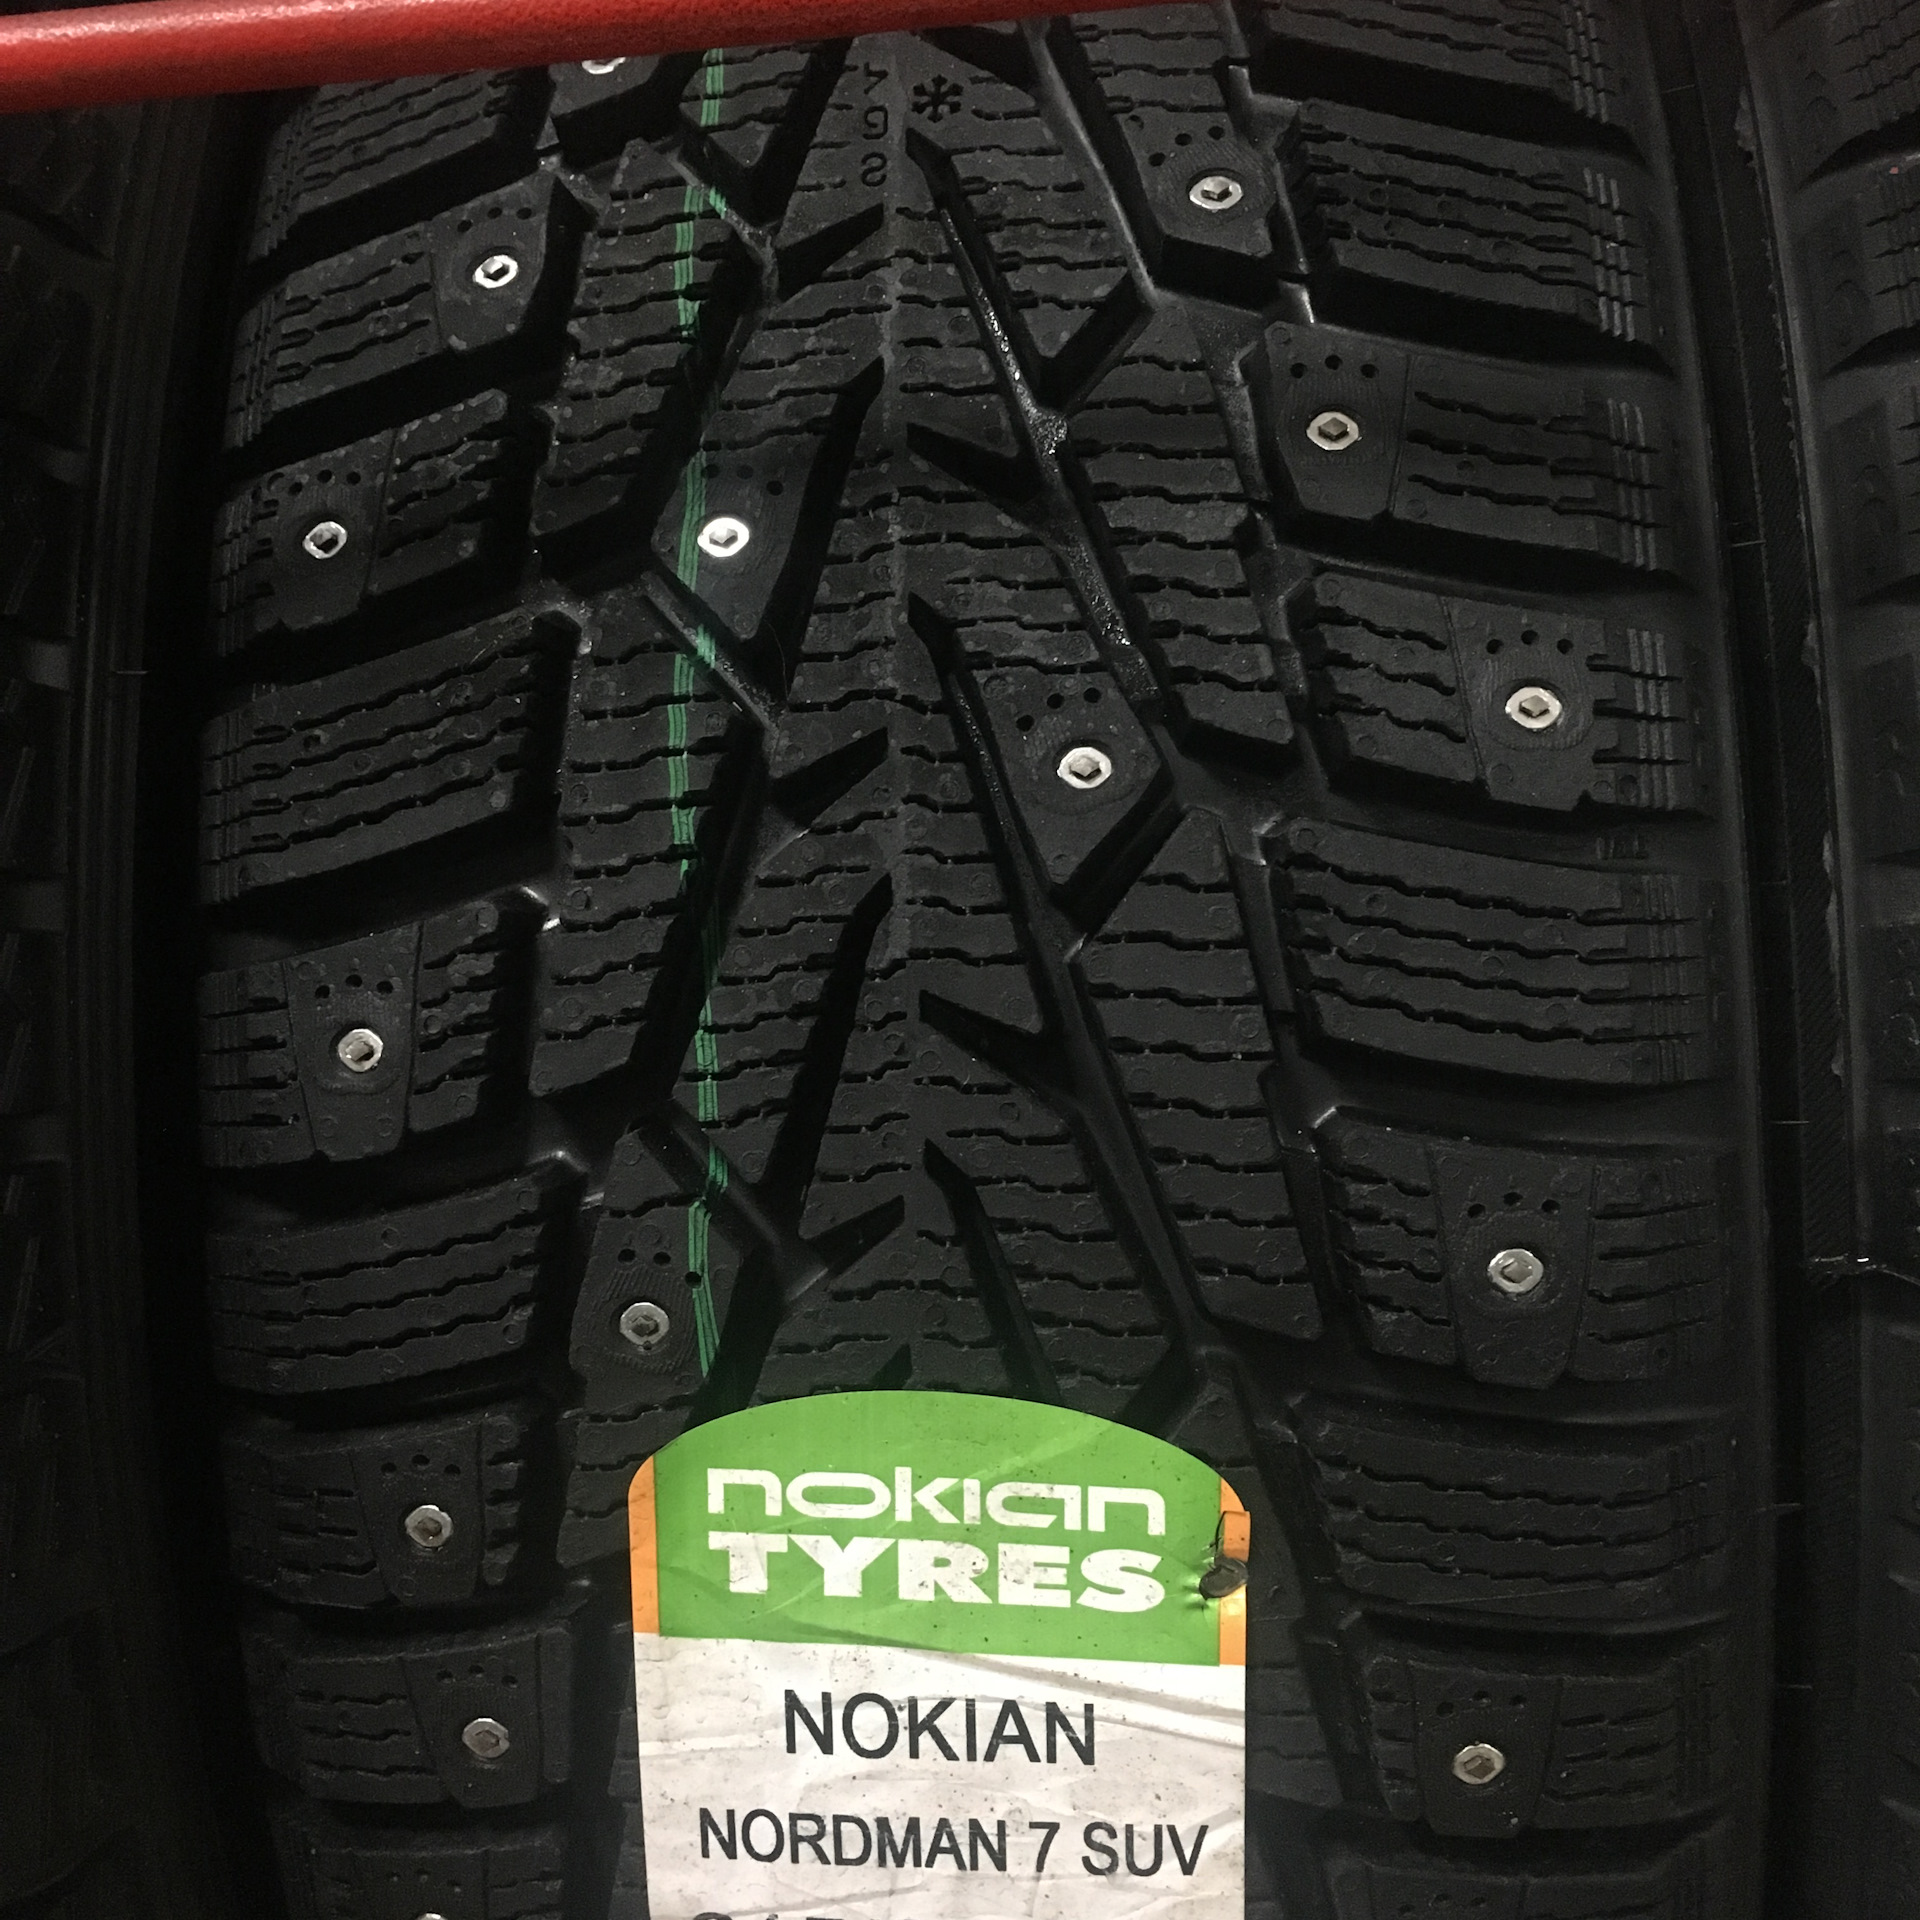 Nordman suv отзывы. Нордман 7 SUV. Nokian Nordman 7 SUV. Nokian Tyres Nordman 7 SUV. Нордман 7 SUV 215 65 16.